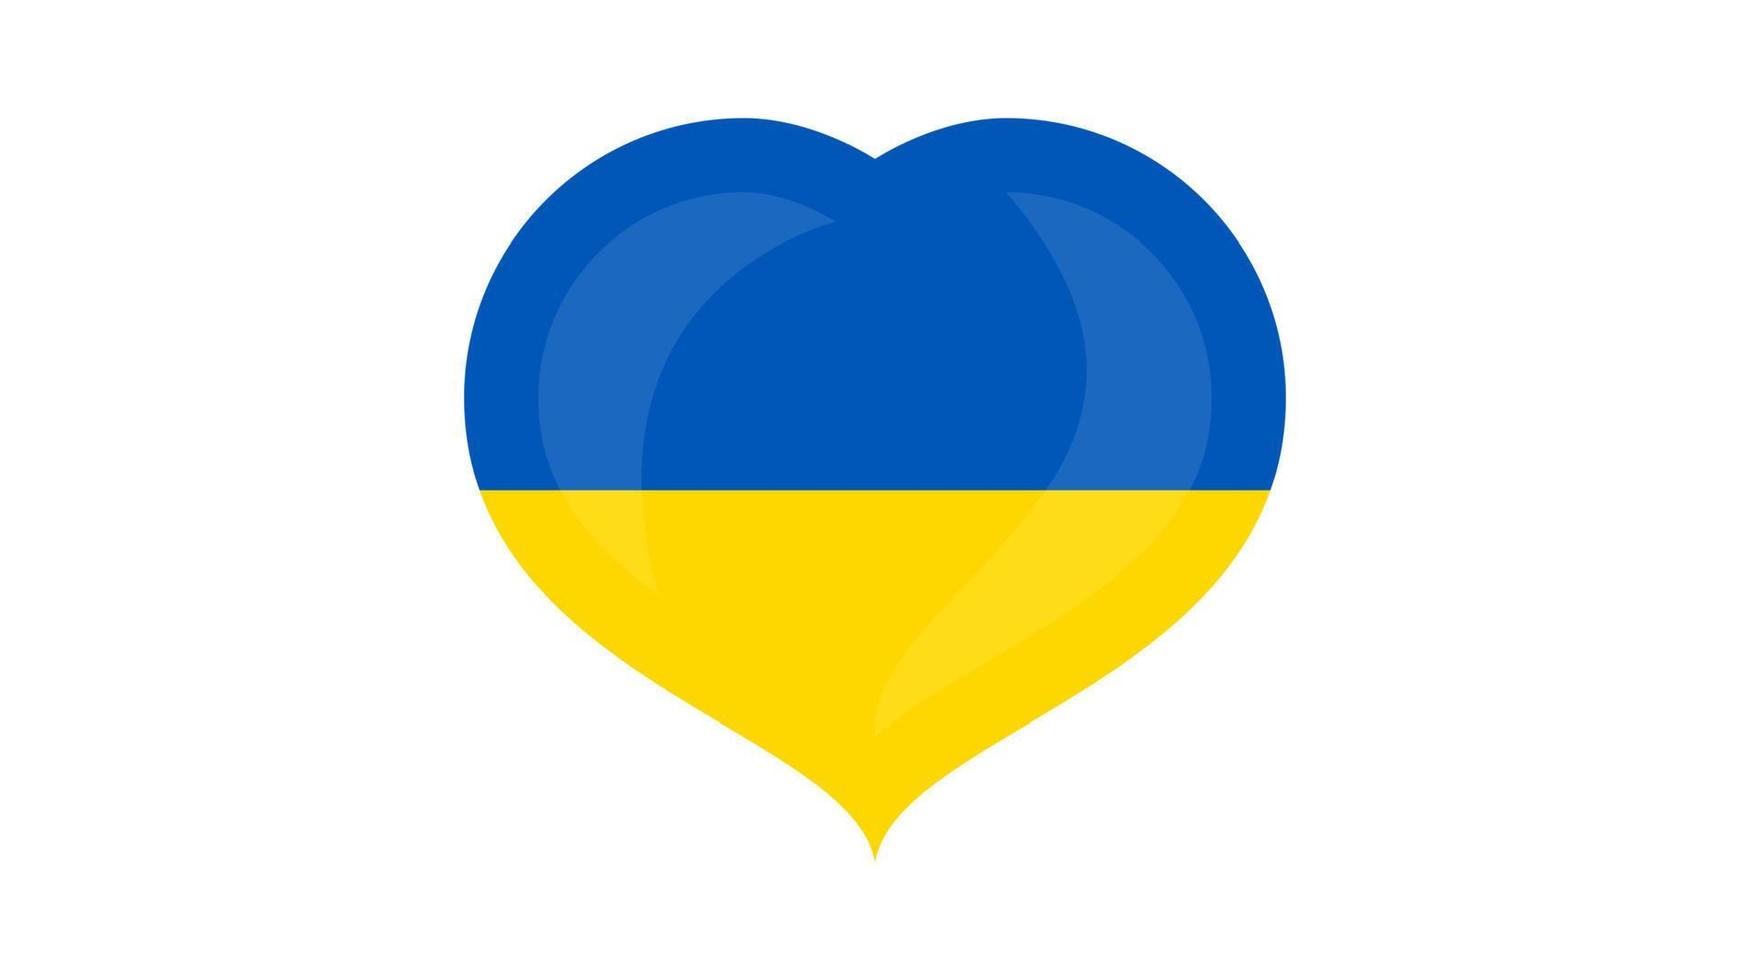 cuore nel ucraino colori vettore